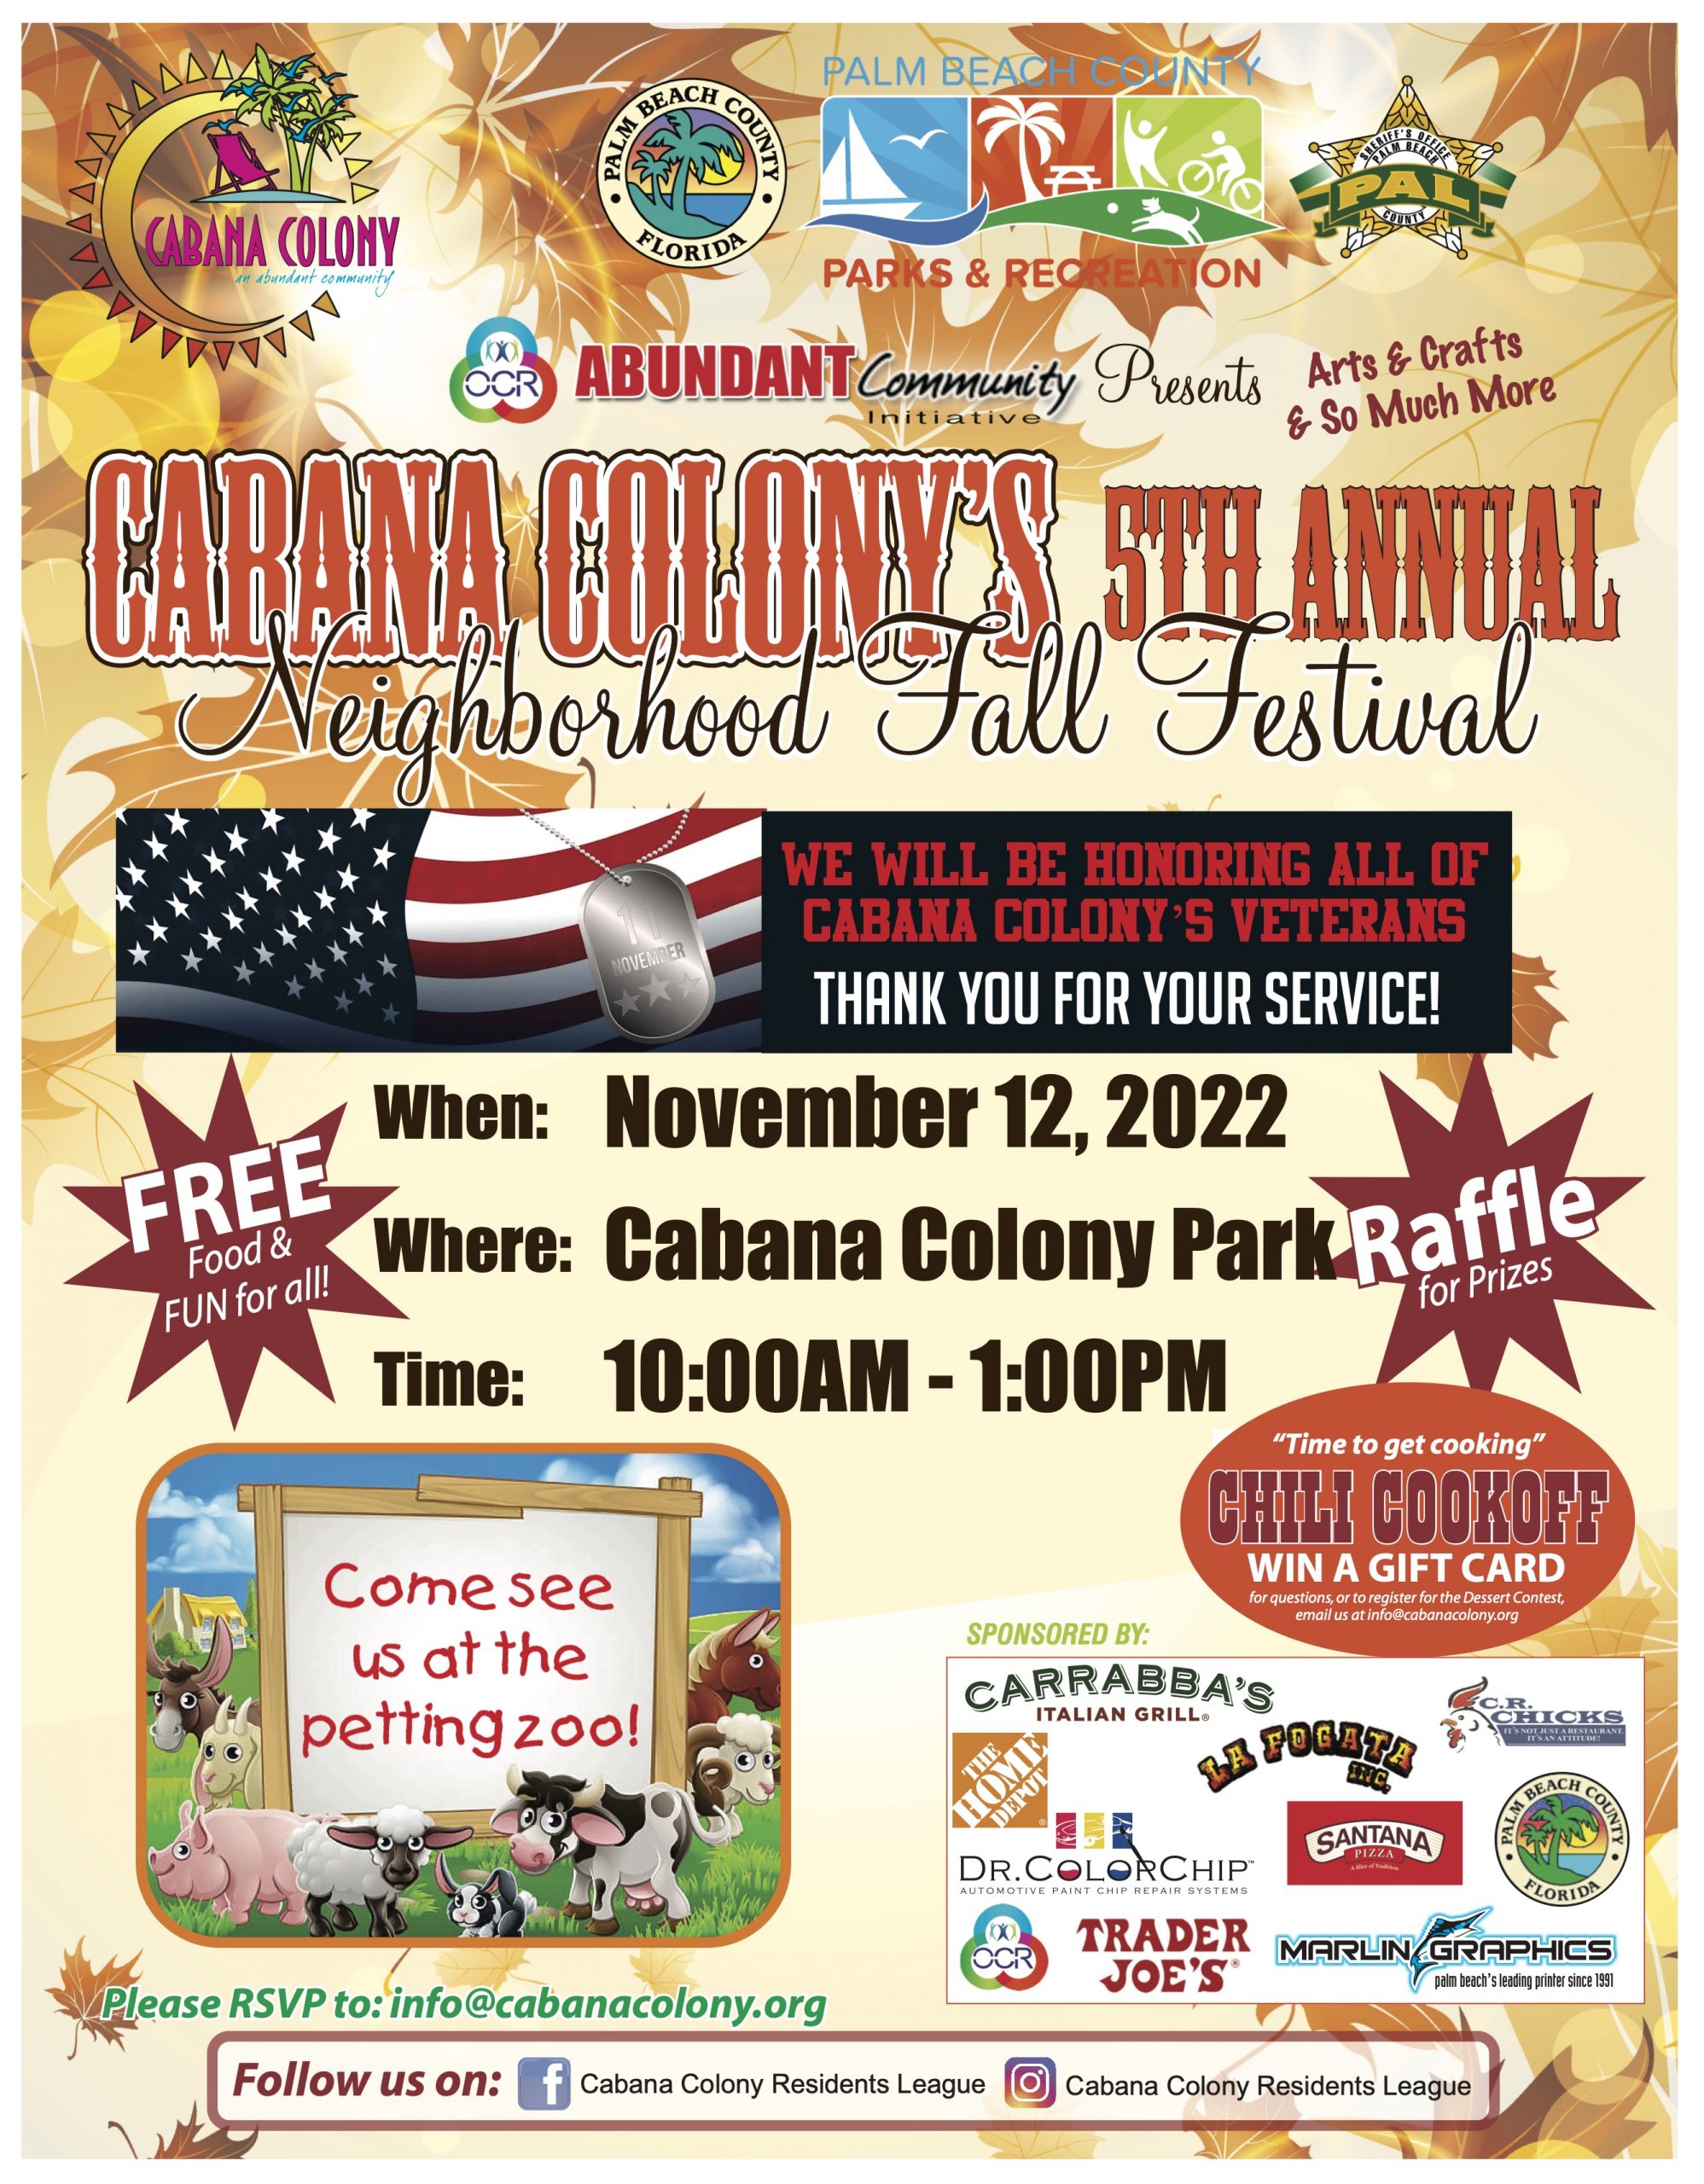 Cabana Colony's 5th Annual Neighborhood Fall Festival 2022